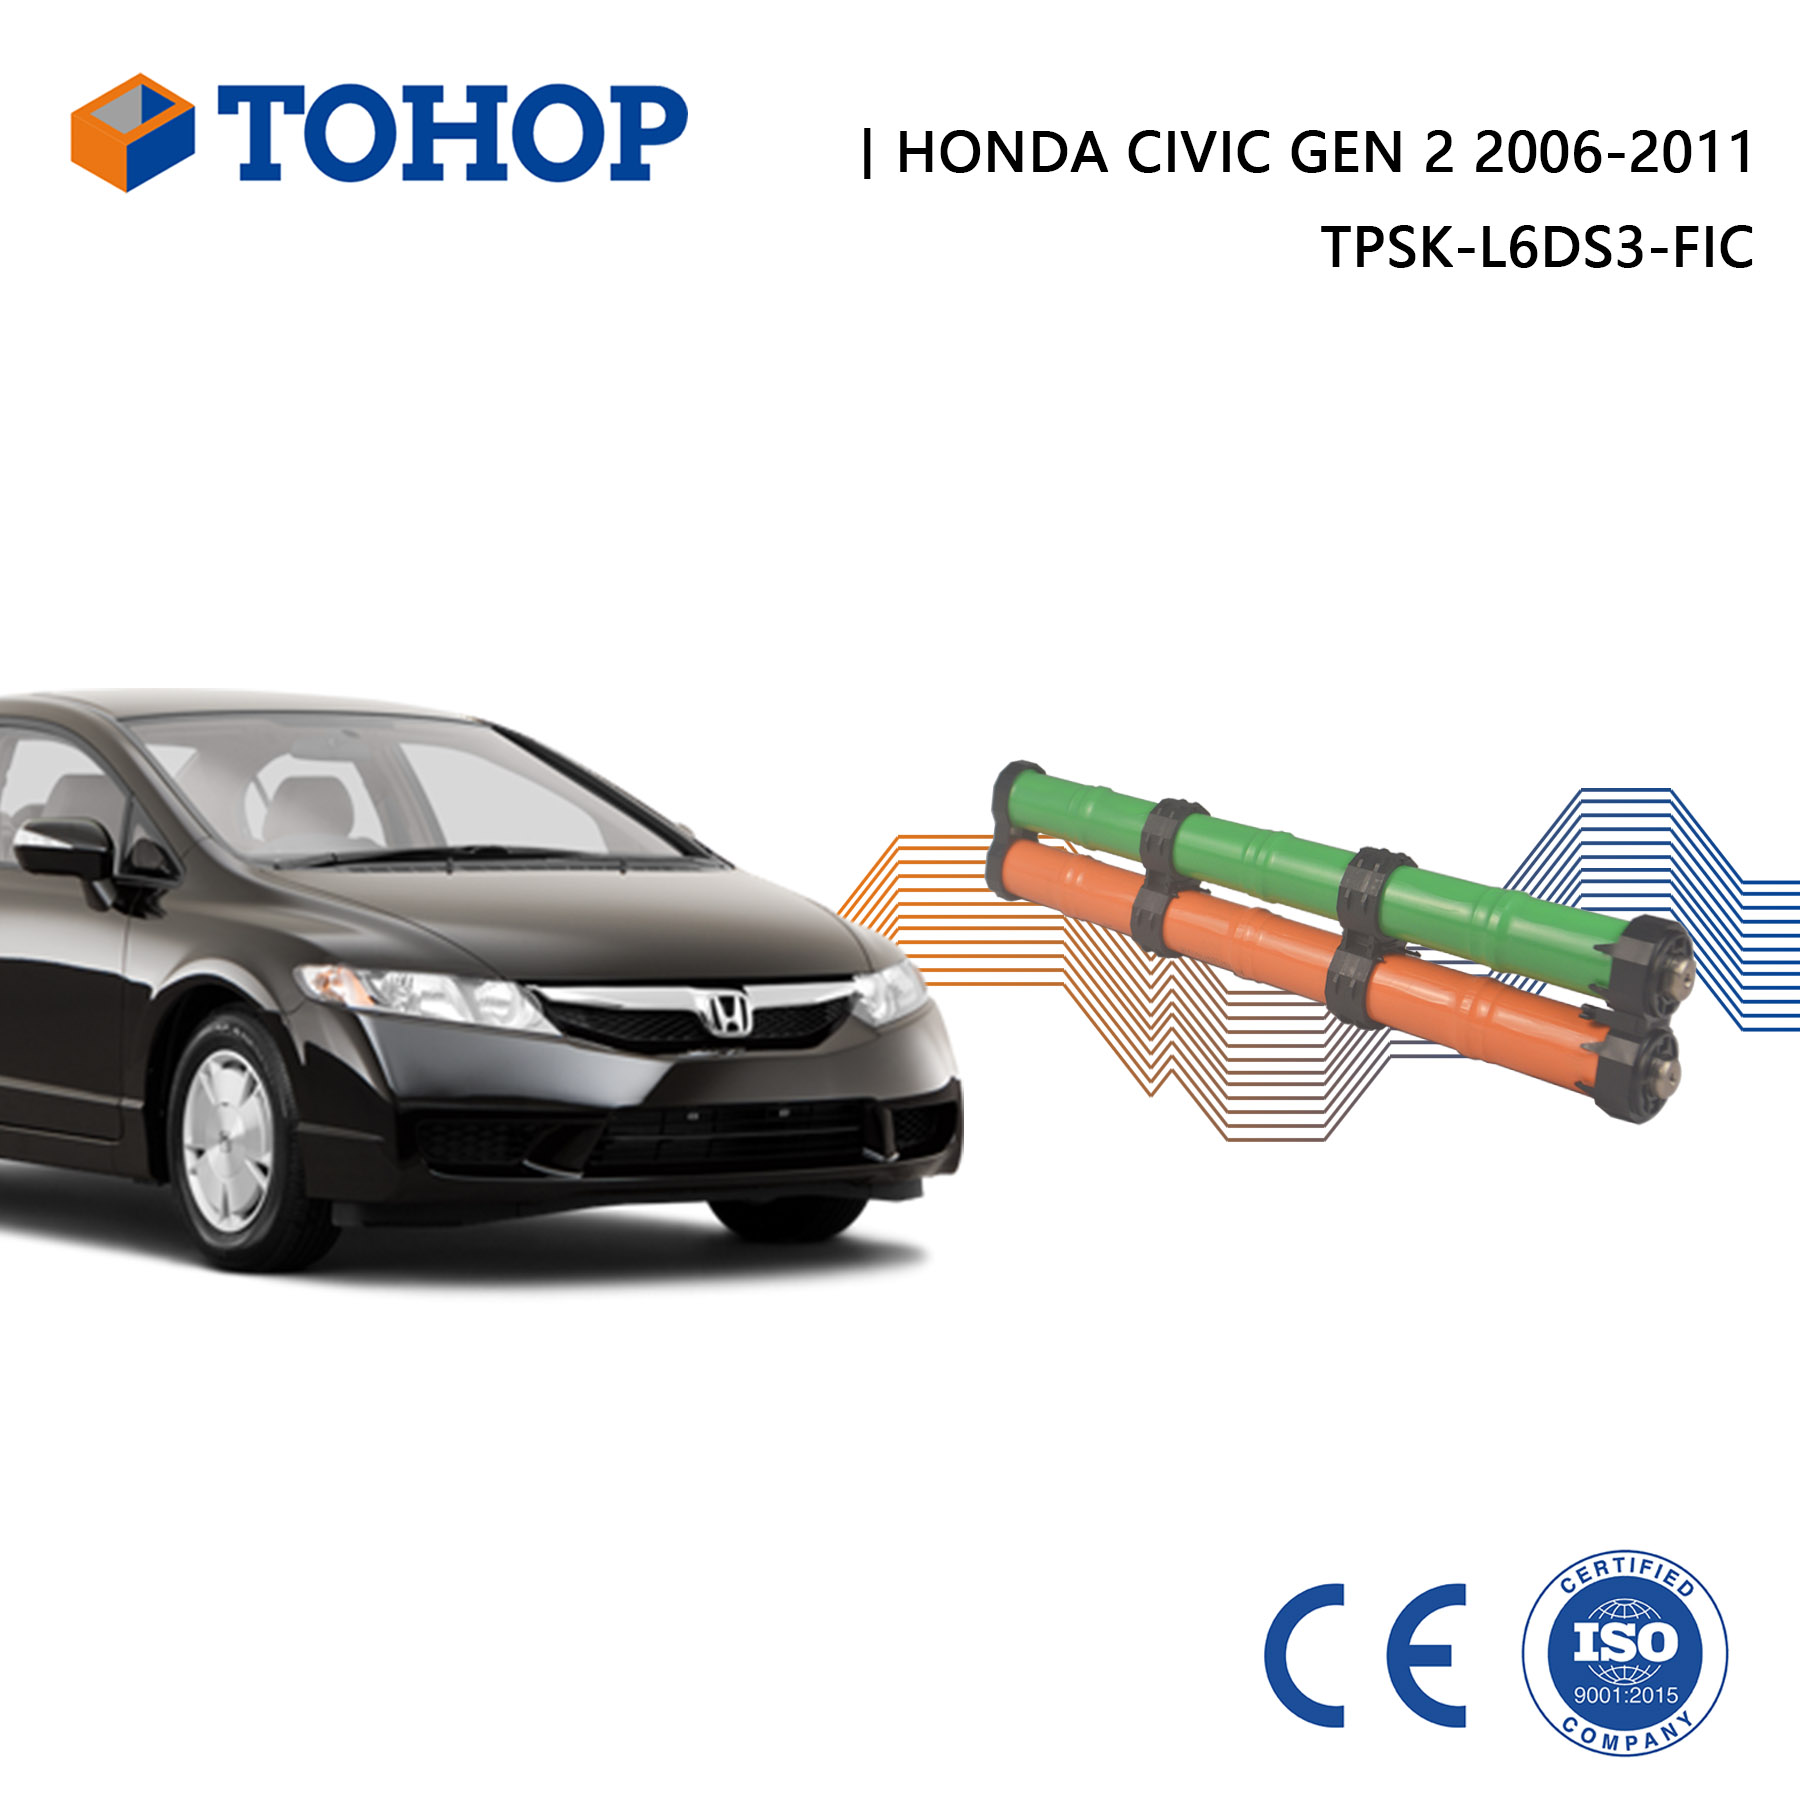 TOHOP Factory Direct Civic 14.4V 6.5Ah Gen.2 Reemplazo de batería híbrida IMA